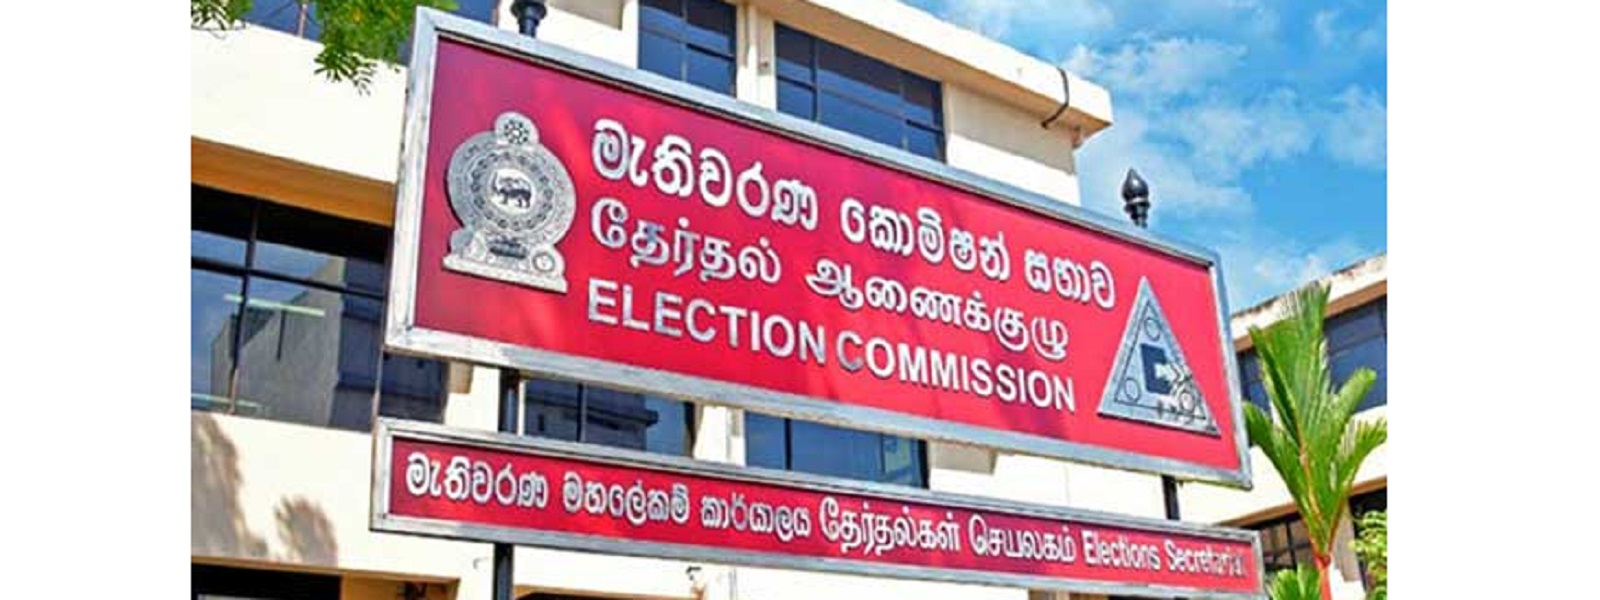 தேர்தல் கண்காணிப்பிற்கு 4 அமைப்புகள்